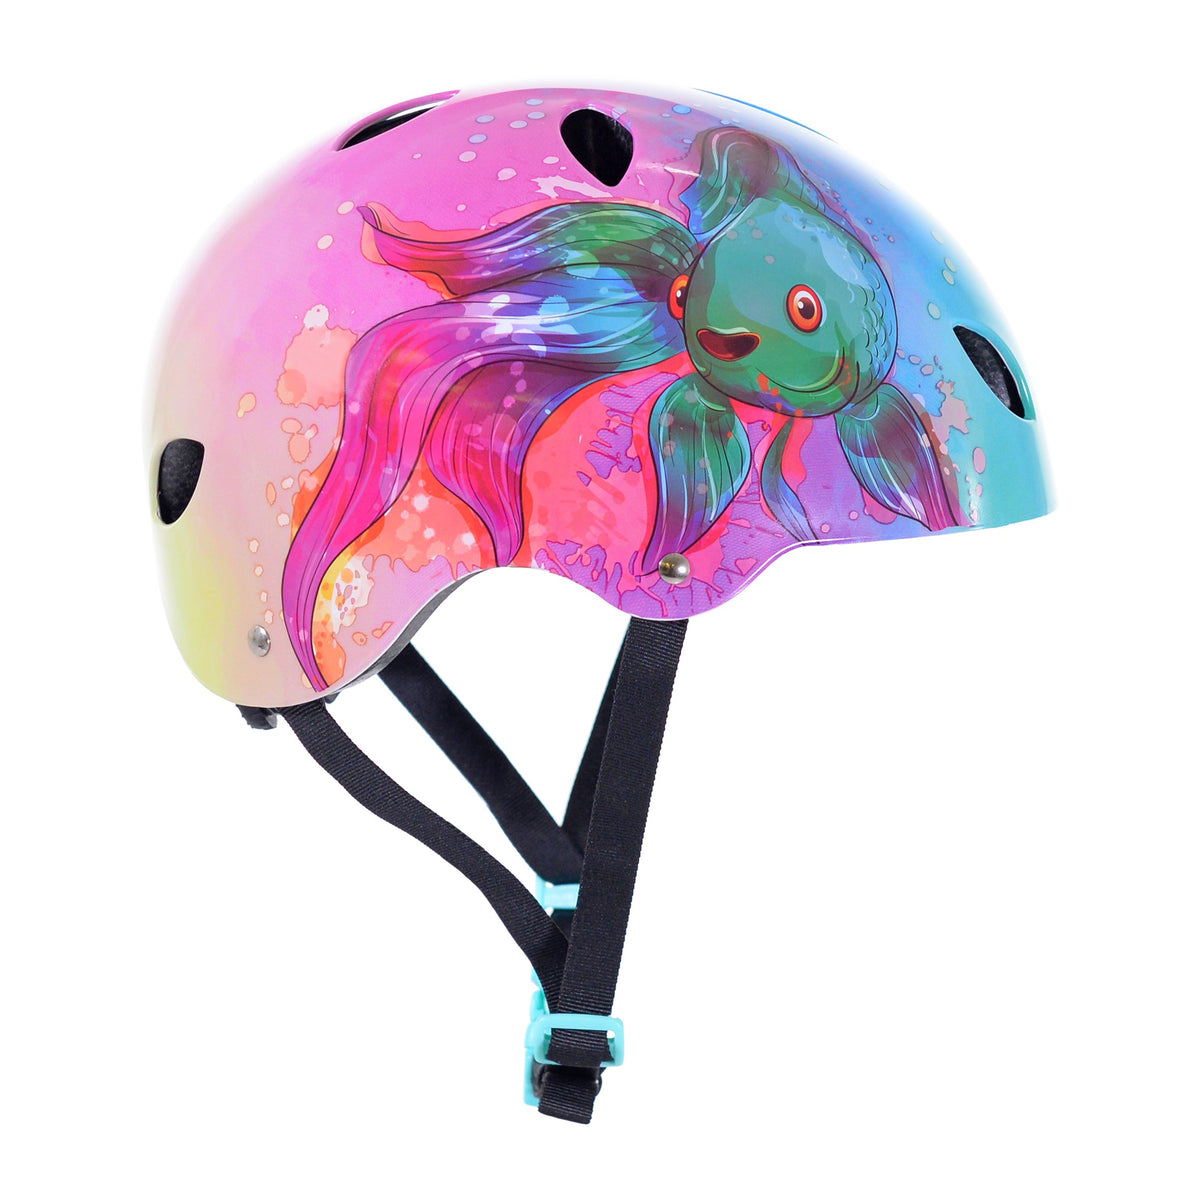 Kent Rainbow Fish Youth Multi-Sport Helmet | Helmet for Kids Ages 8+